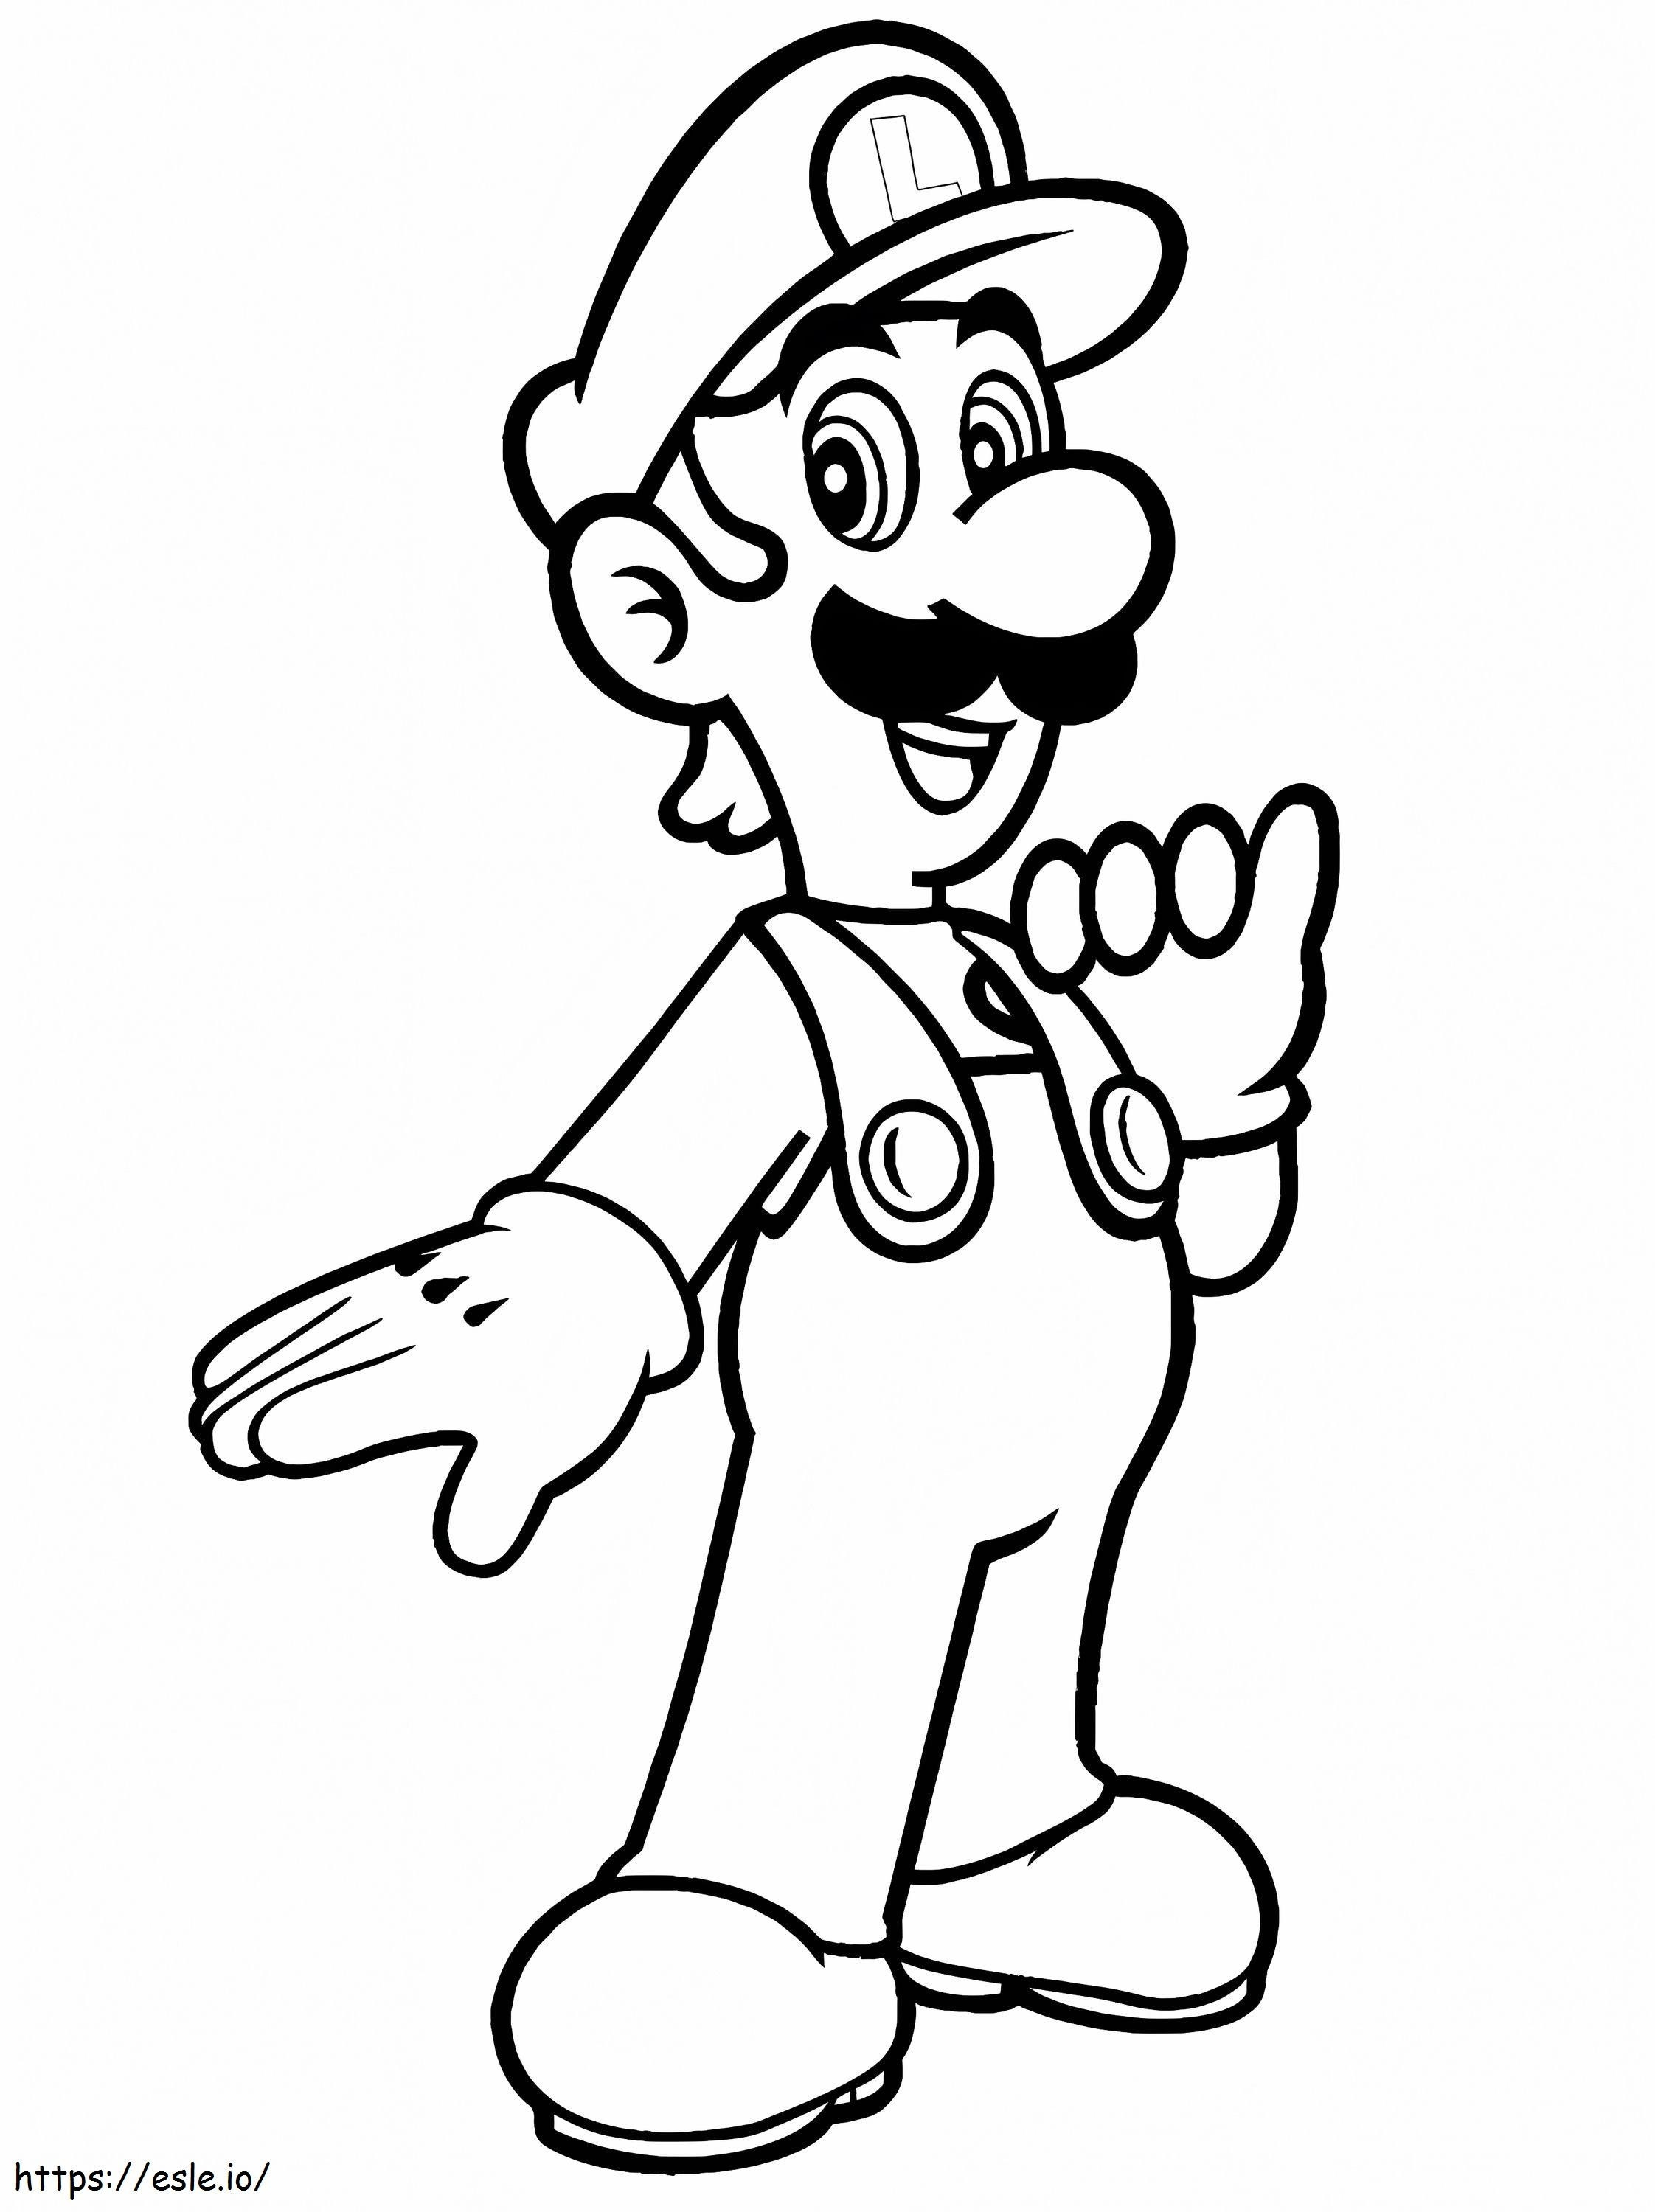 Luigi De Super Mario 1 766X1024 coloring page